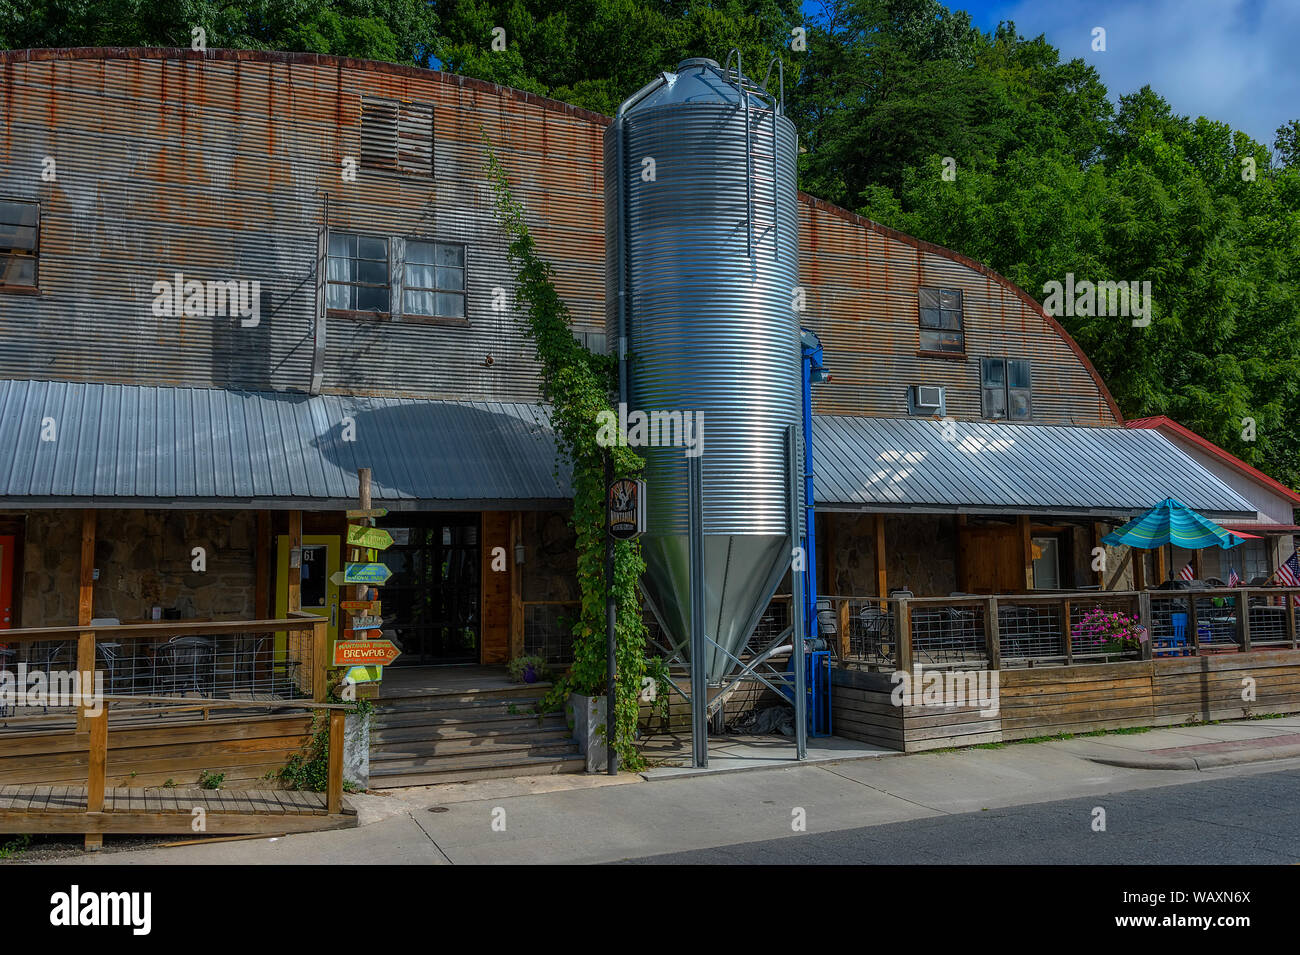 Bryson, North Carolina, USA - August 3, 2019: Ein altes Gebäude mit Geschäften und Restaurants in Bryson, aus einem fahrenden Zug gesehen. Stockfoto